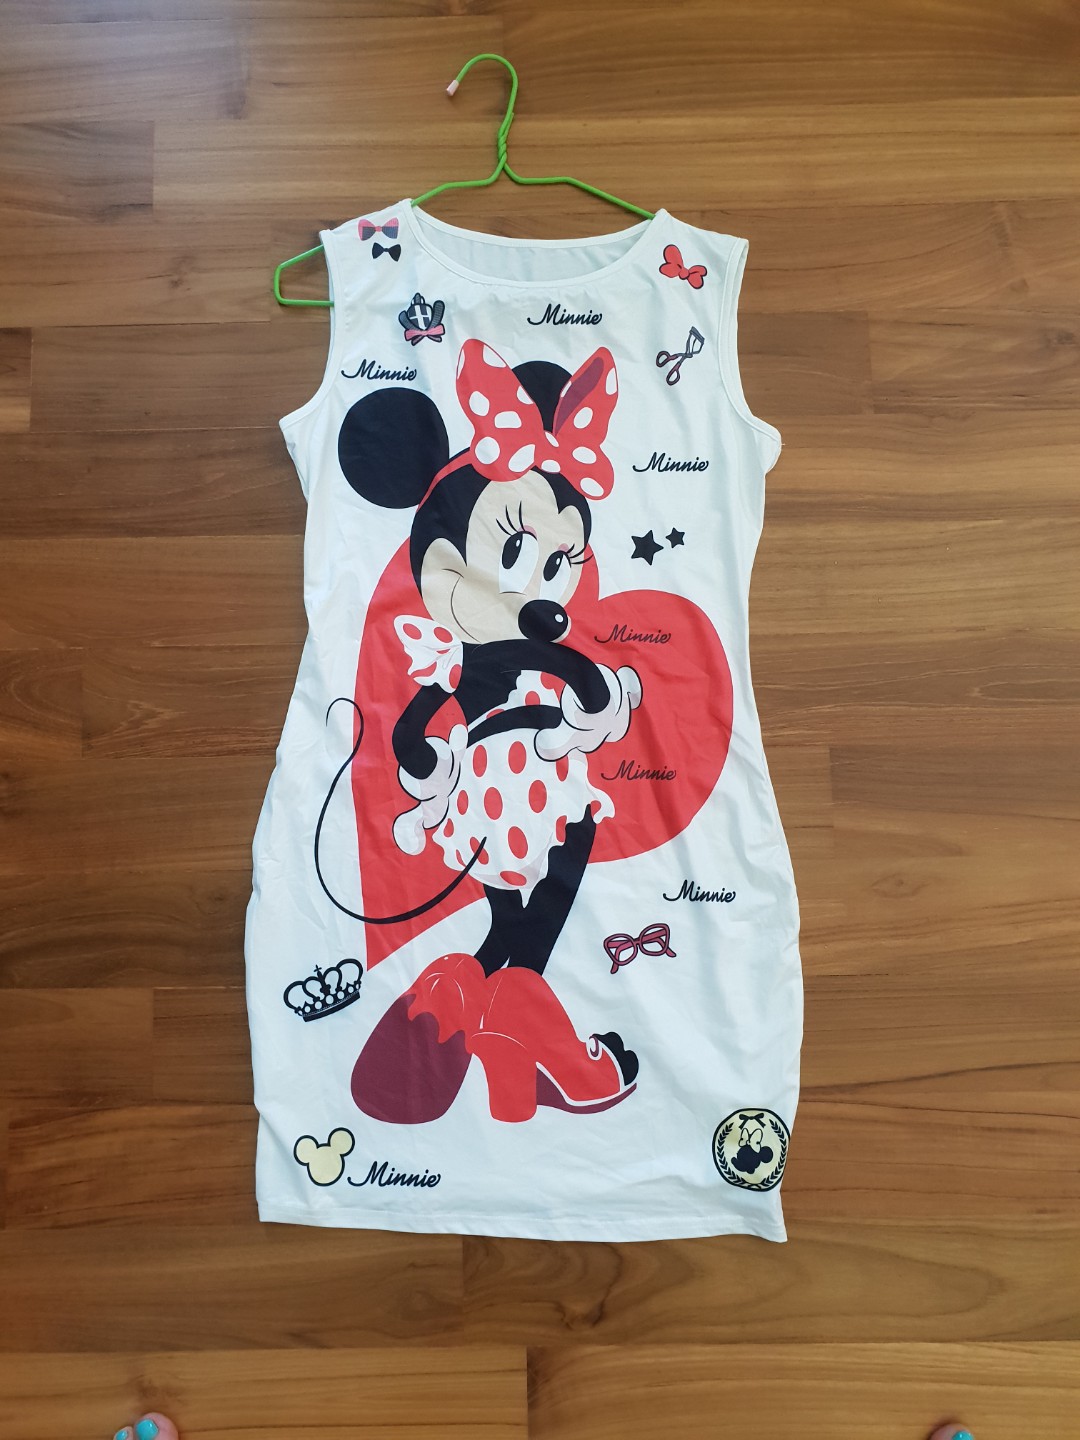 Minnie Mouse Dress 1558763665 E759b523 